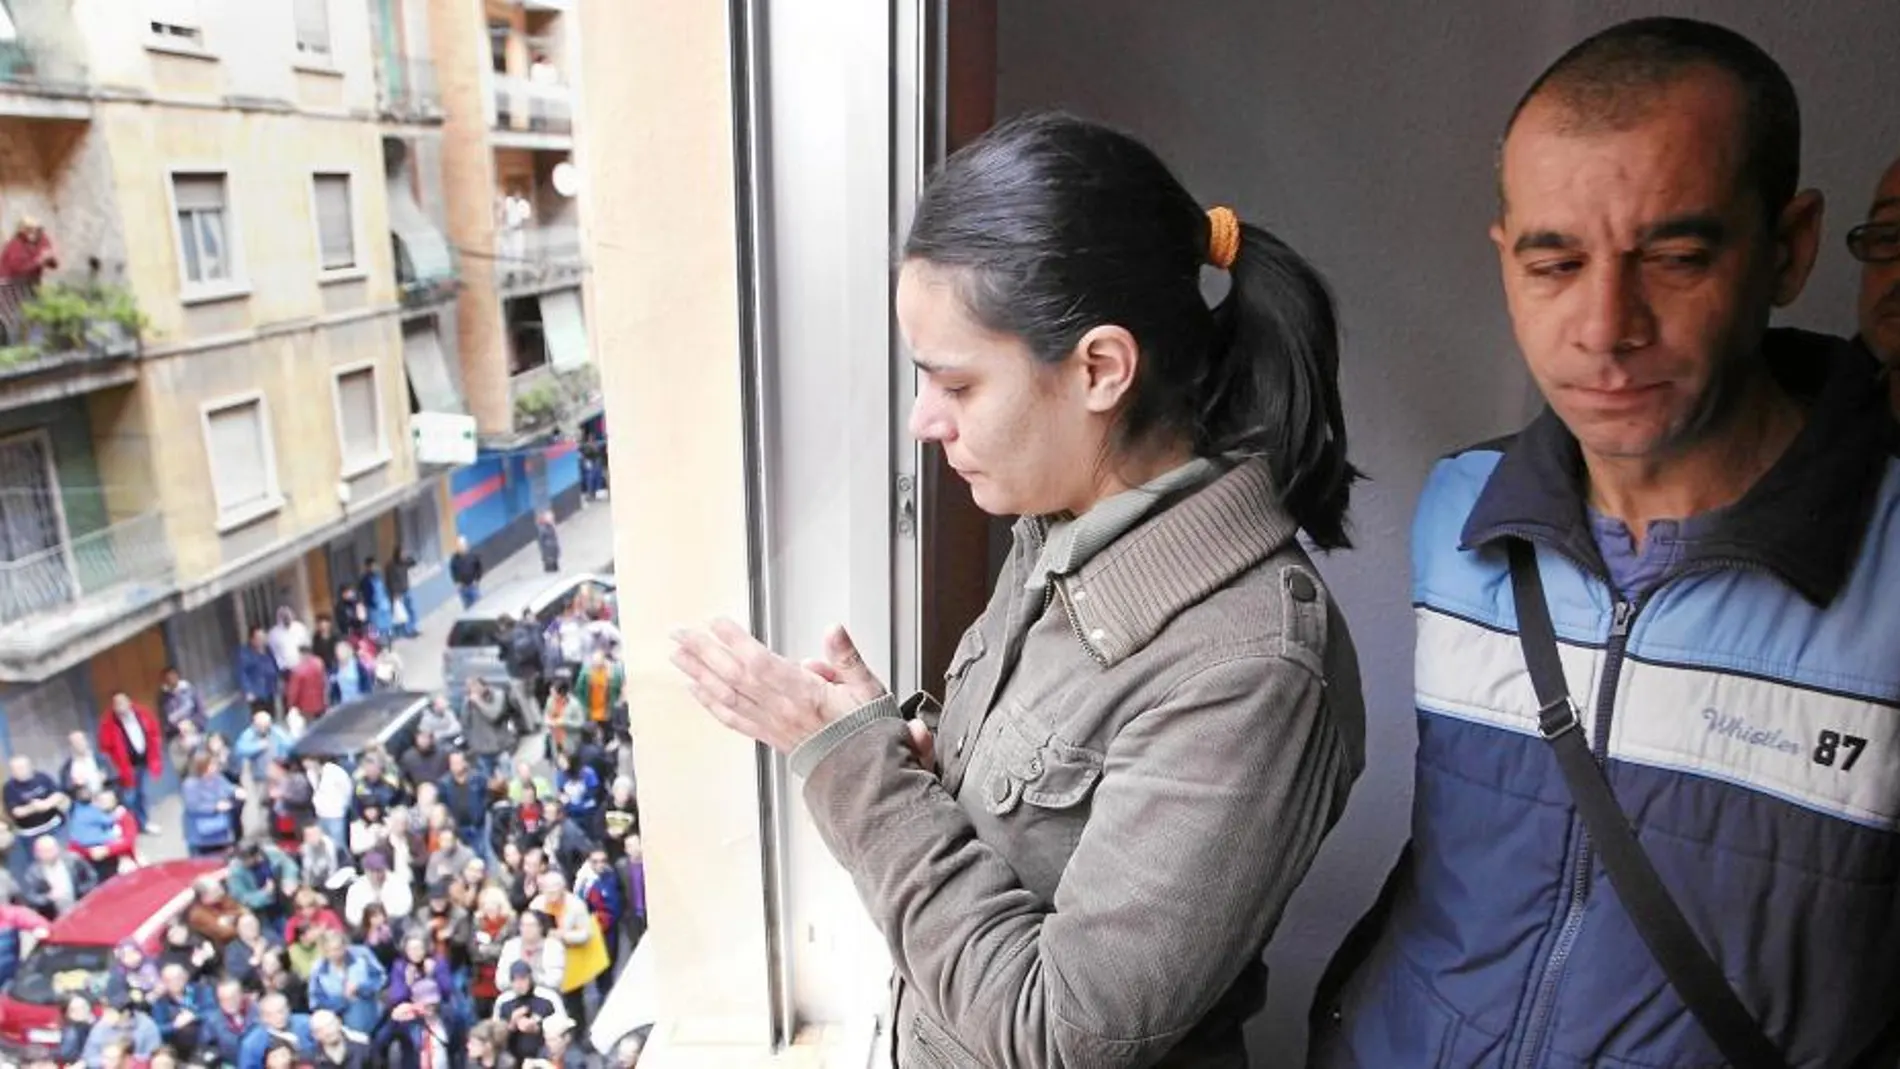 Durante los próximos meses, la Generalitat prevé entregar 121 viviendas en régimen de alquiler a personas desahuciadas